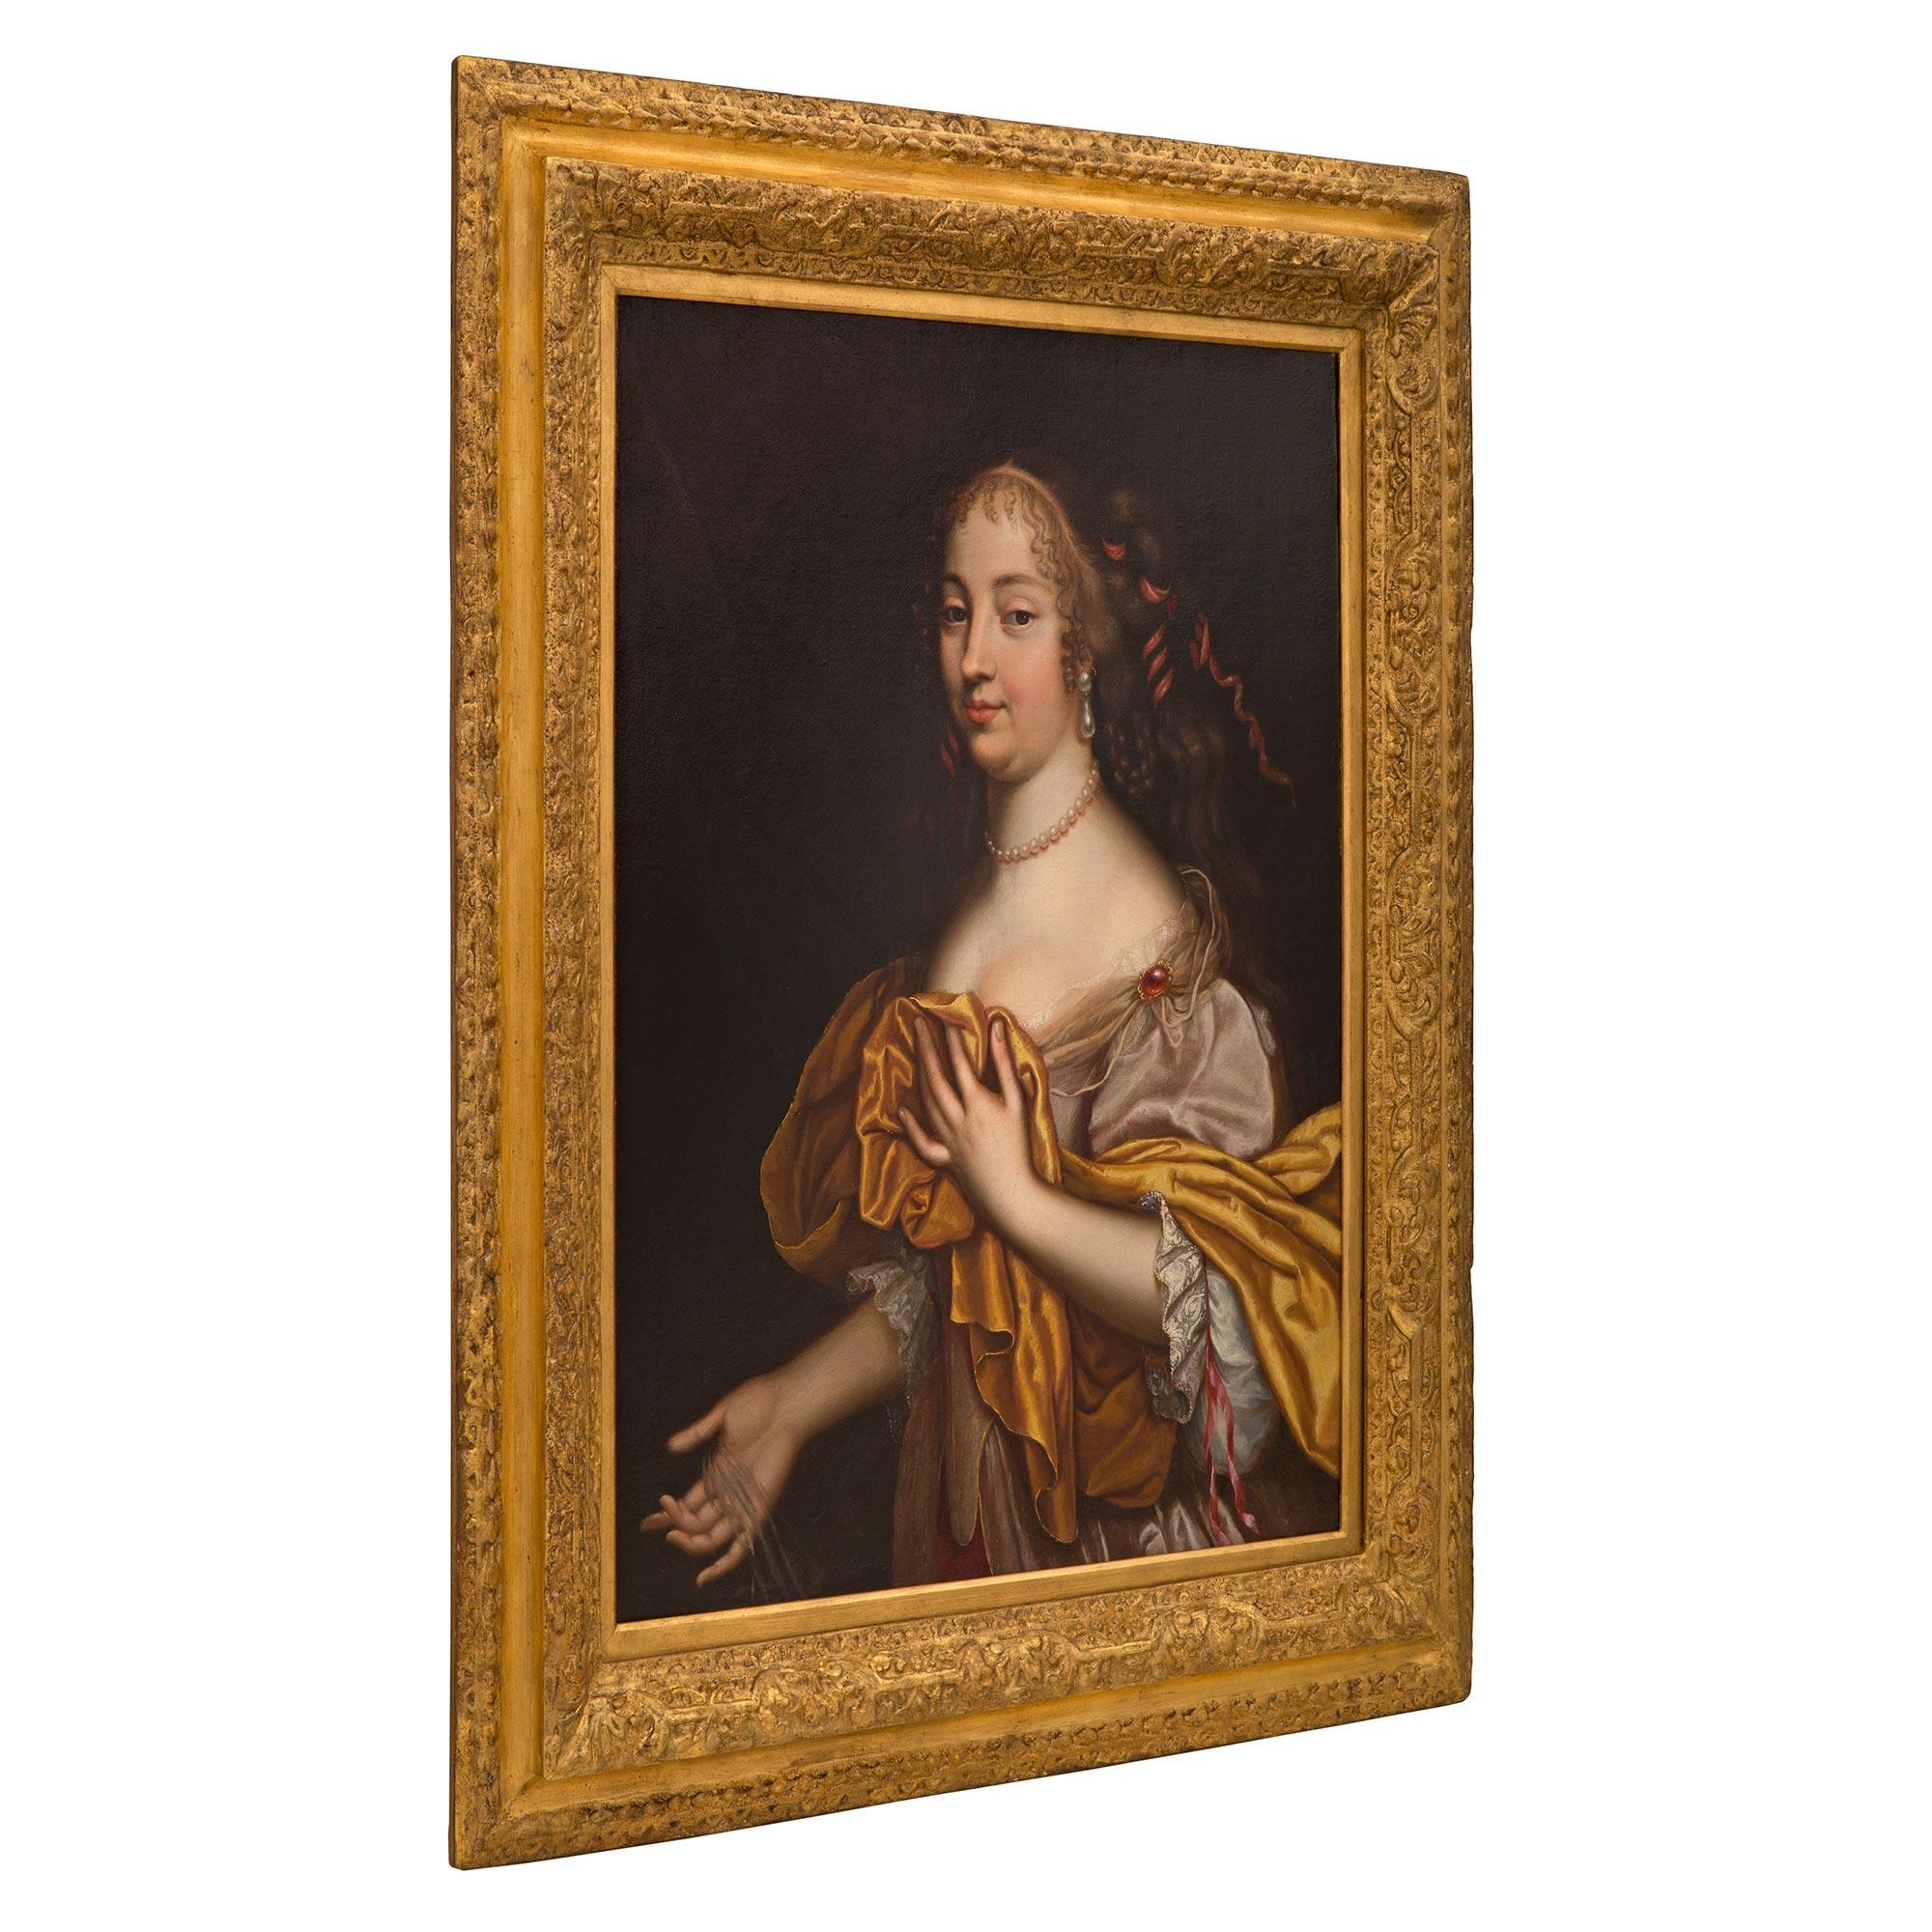 Eine schöne und wunderbar ausgeführt Englisch 19. Jahrhundert Louis XVI st. Öl auf Leinwand Gemälde in der Art von Sir Peter Lely. Das Gemälde zeigt ein schönes Mädchen in einem eleganten, fließenden Gewand mit roter Juwelenspange. Sie trägt eine